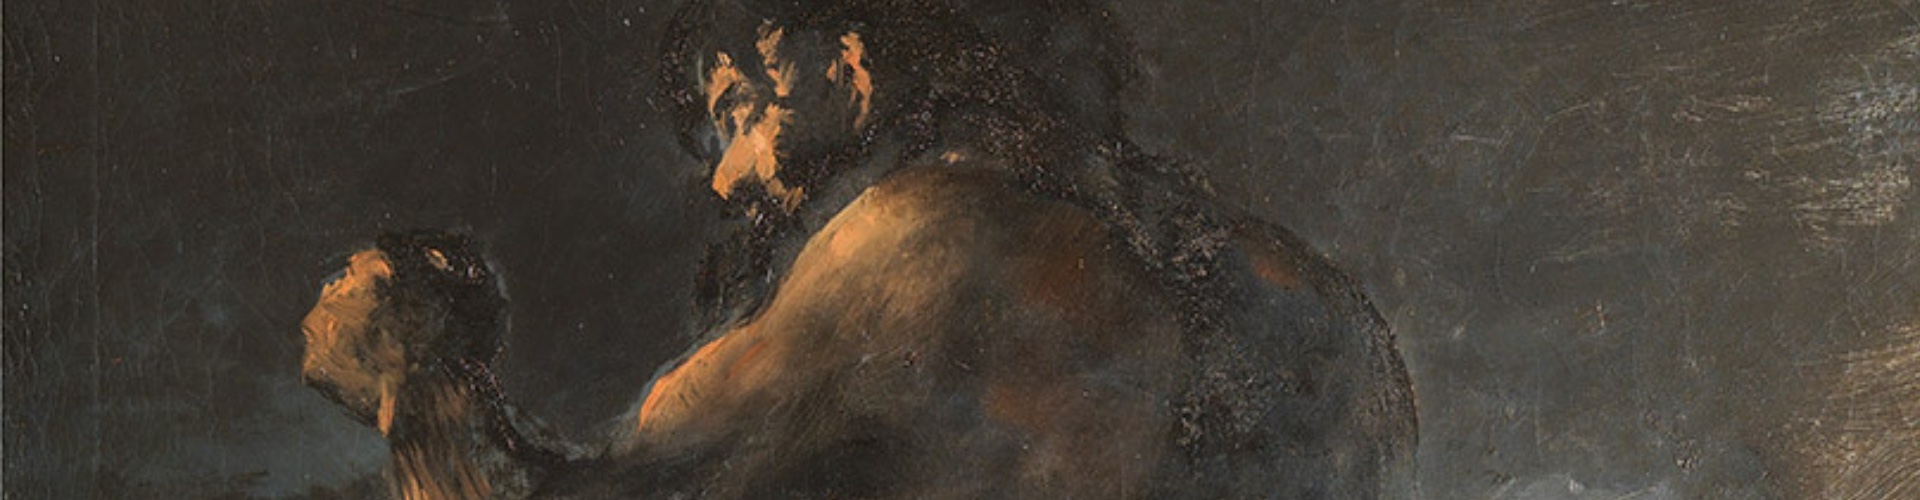 Milano, El Greco e Goya in mostra